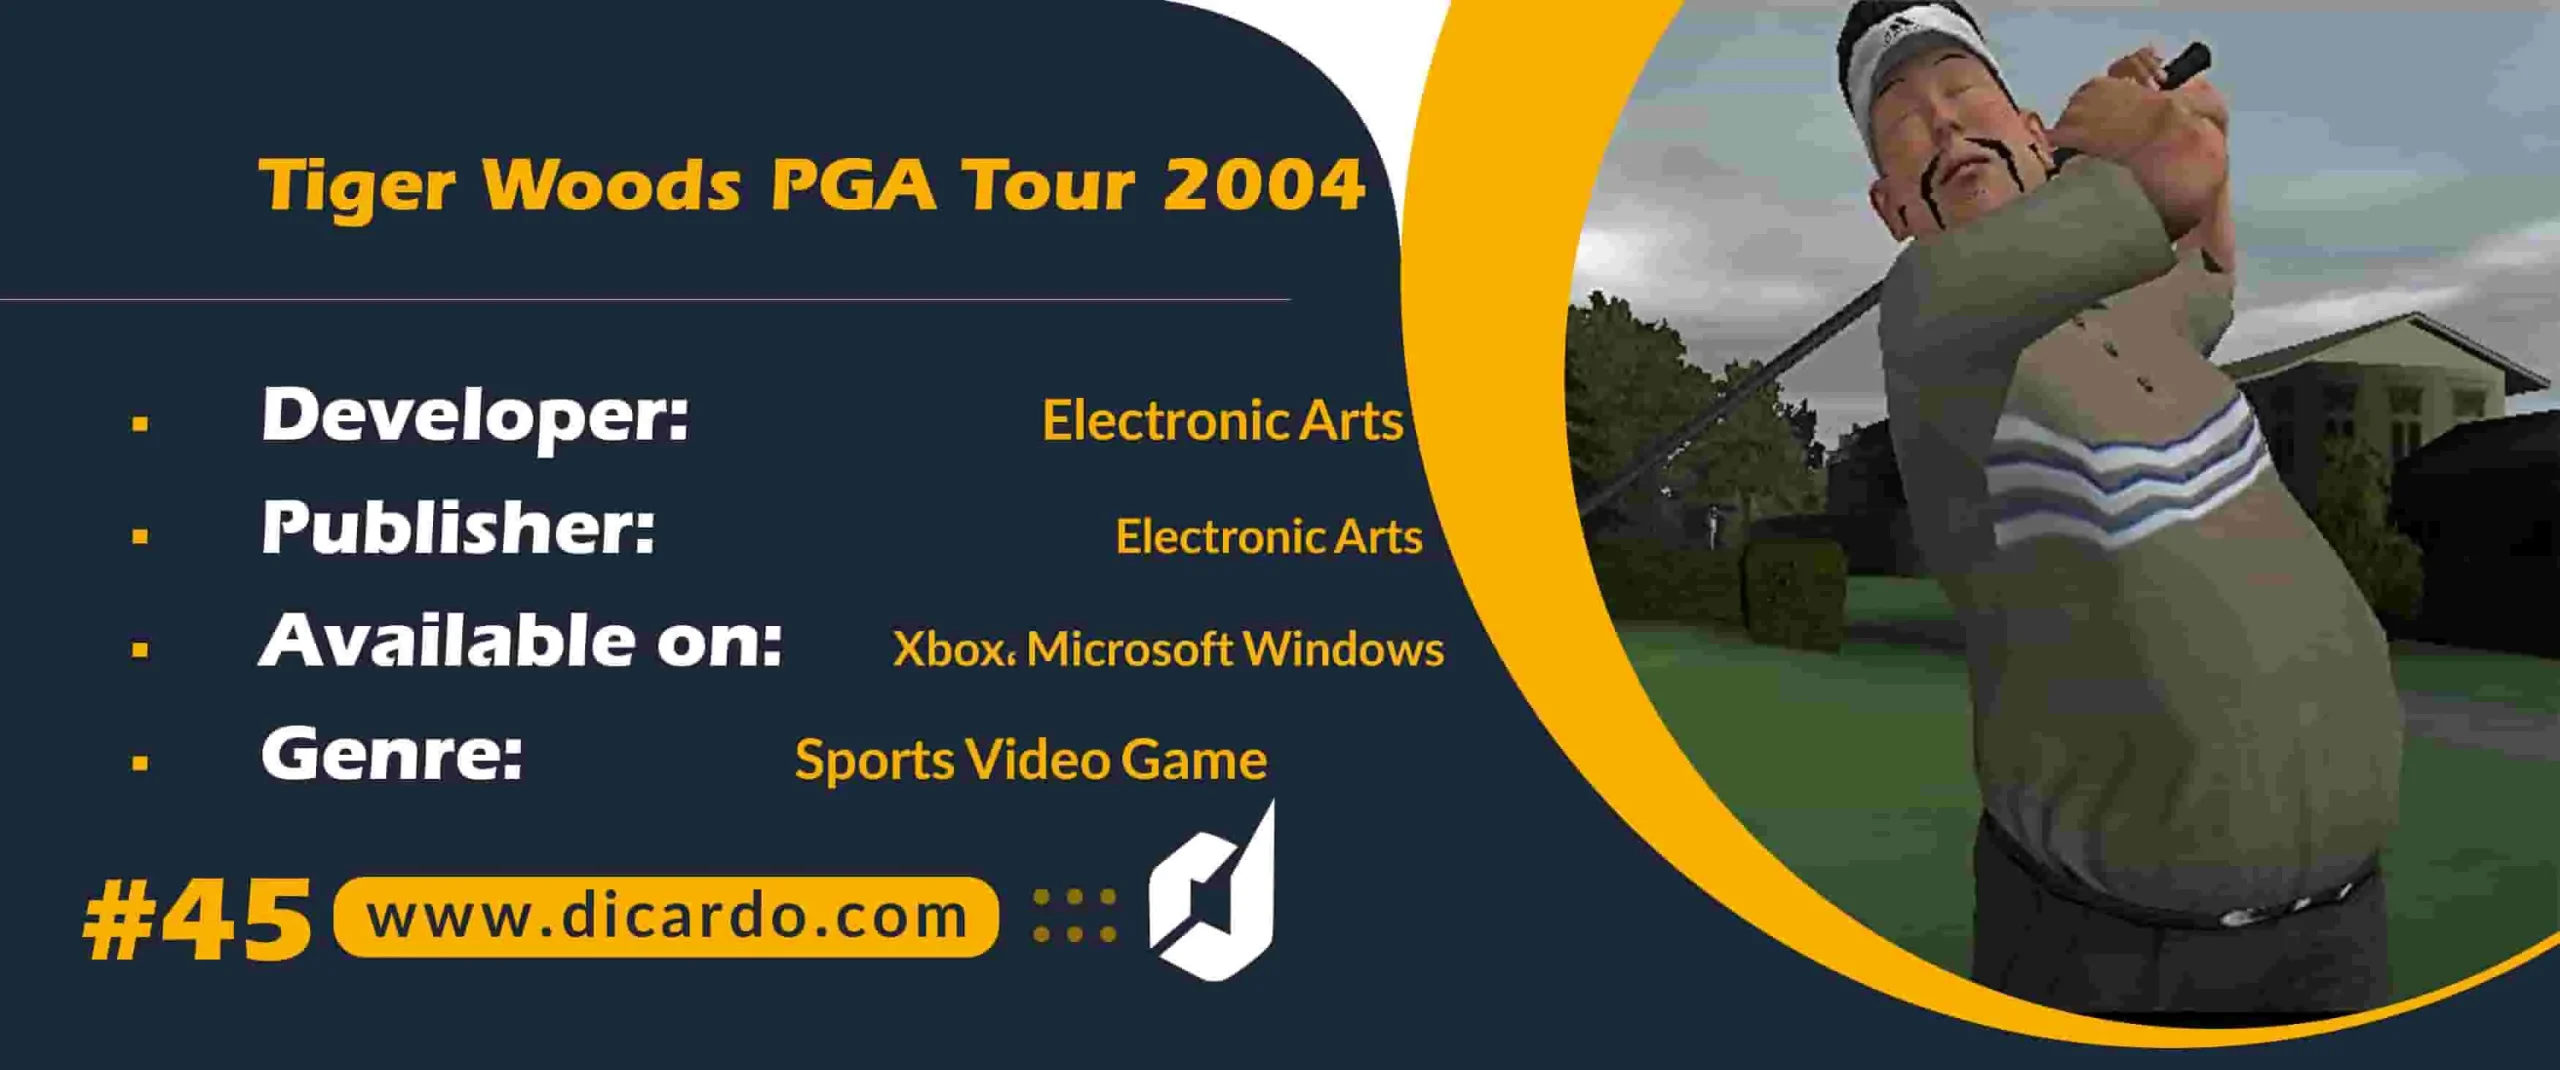 #45 تایگر وودز پی جی ای توور 2004  Tiger Woods PGA Tour 2004